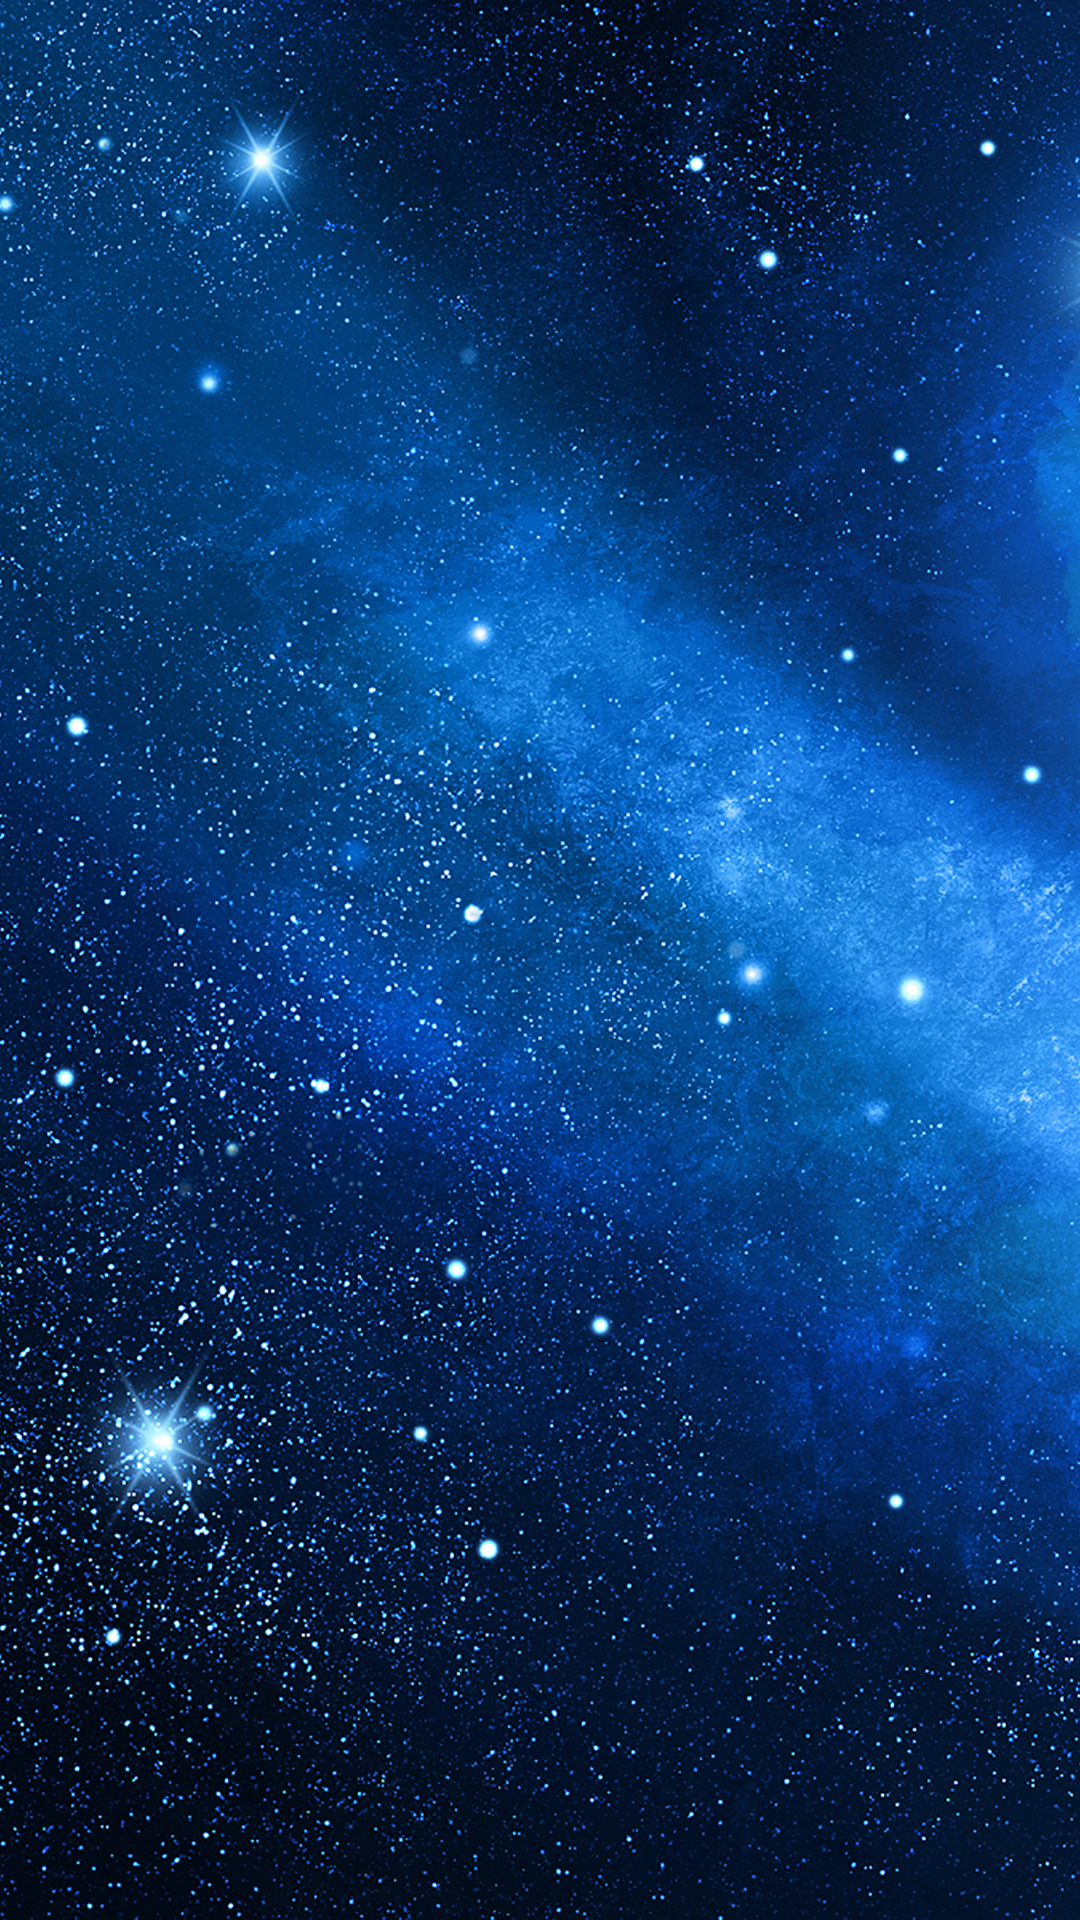 Bạn là một tín đồ của gam màu xanh và vũ trụ không gian? Chắc chắn hình nền với chủ đề Thiên Hà Xanh sẽ khiến bạn say đắm. Đừng chần chờ gì nữa mà hãy tham gia ngay để tận hưởng những trải nghiệm tuyệt vời!